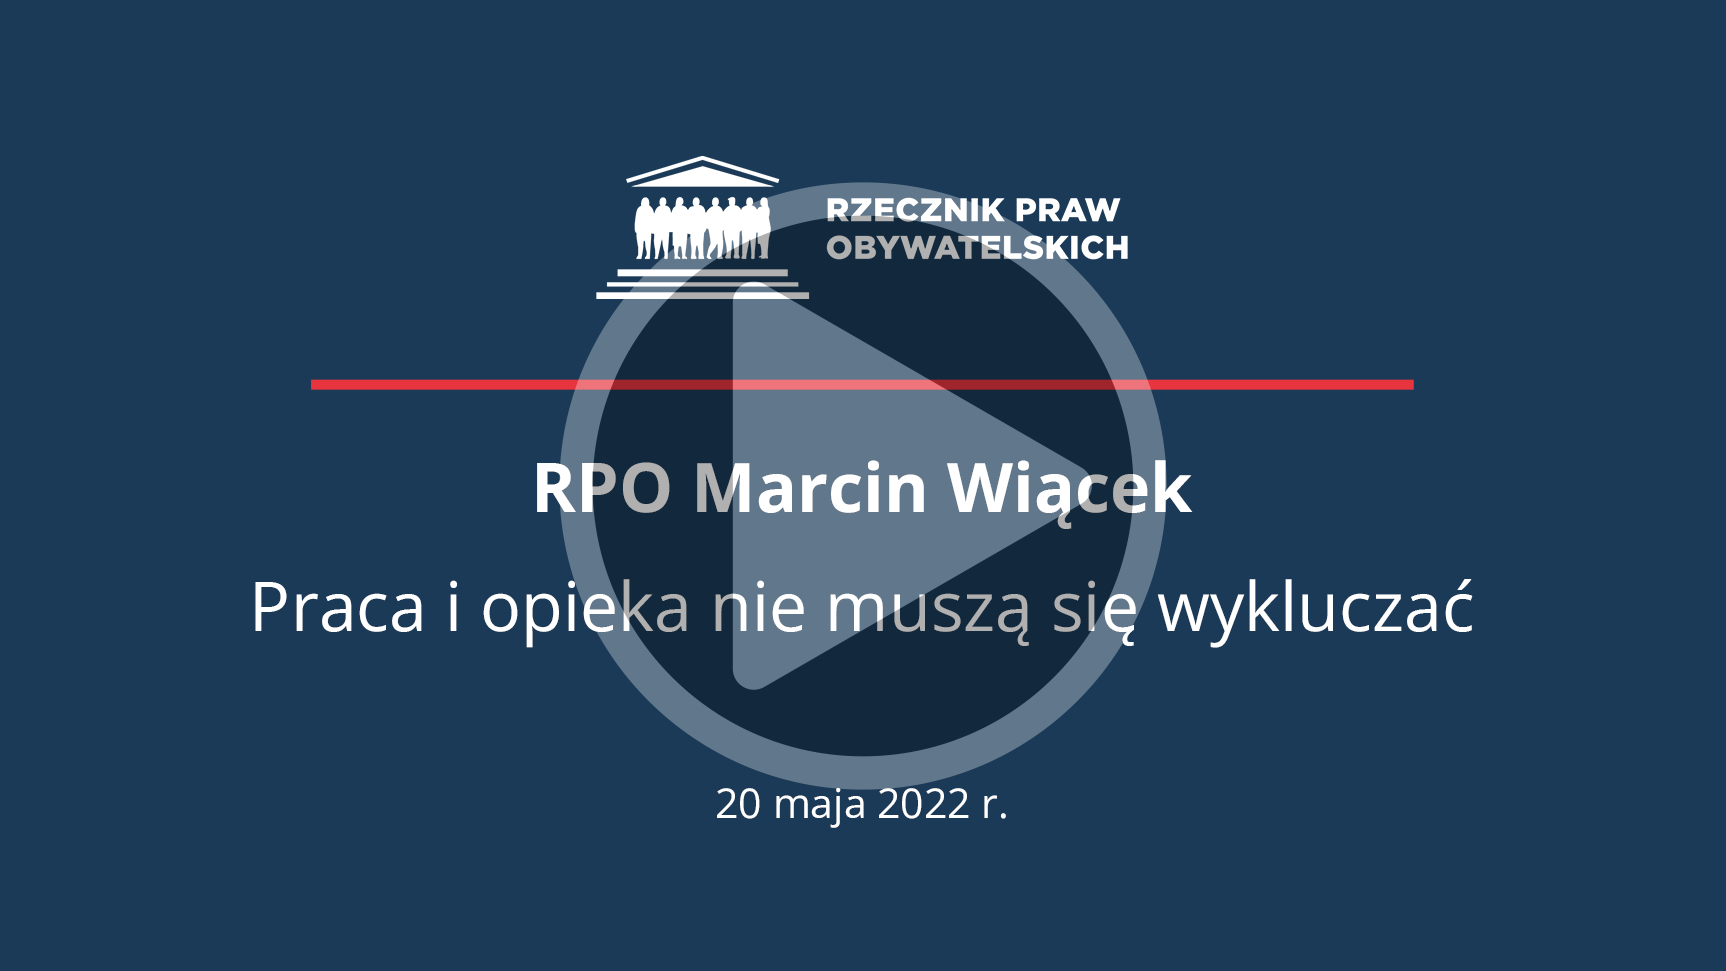 Plansza z napisem RPO Marcin Wiącek - Praca i opieka nie muszą się wykluczać - 20 maja 2022 i przyciskiem odtwarzania wideo